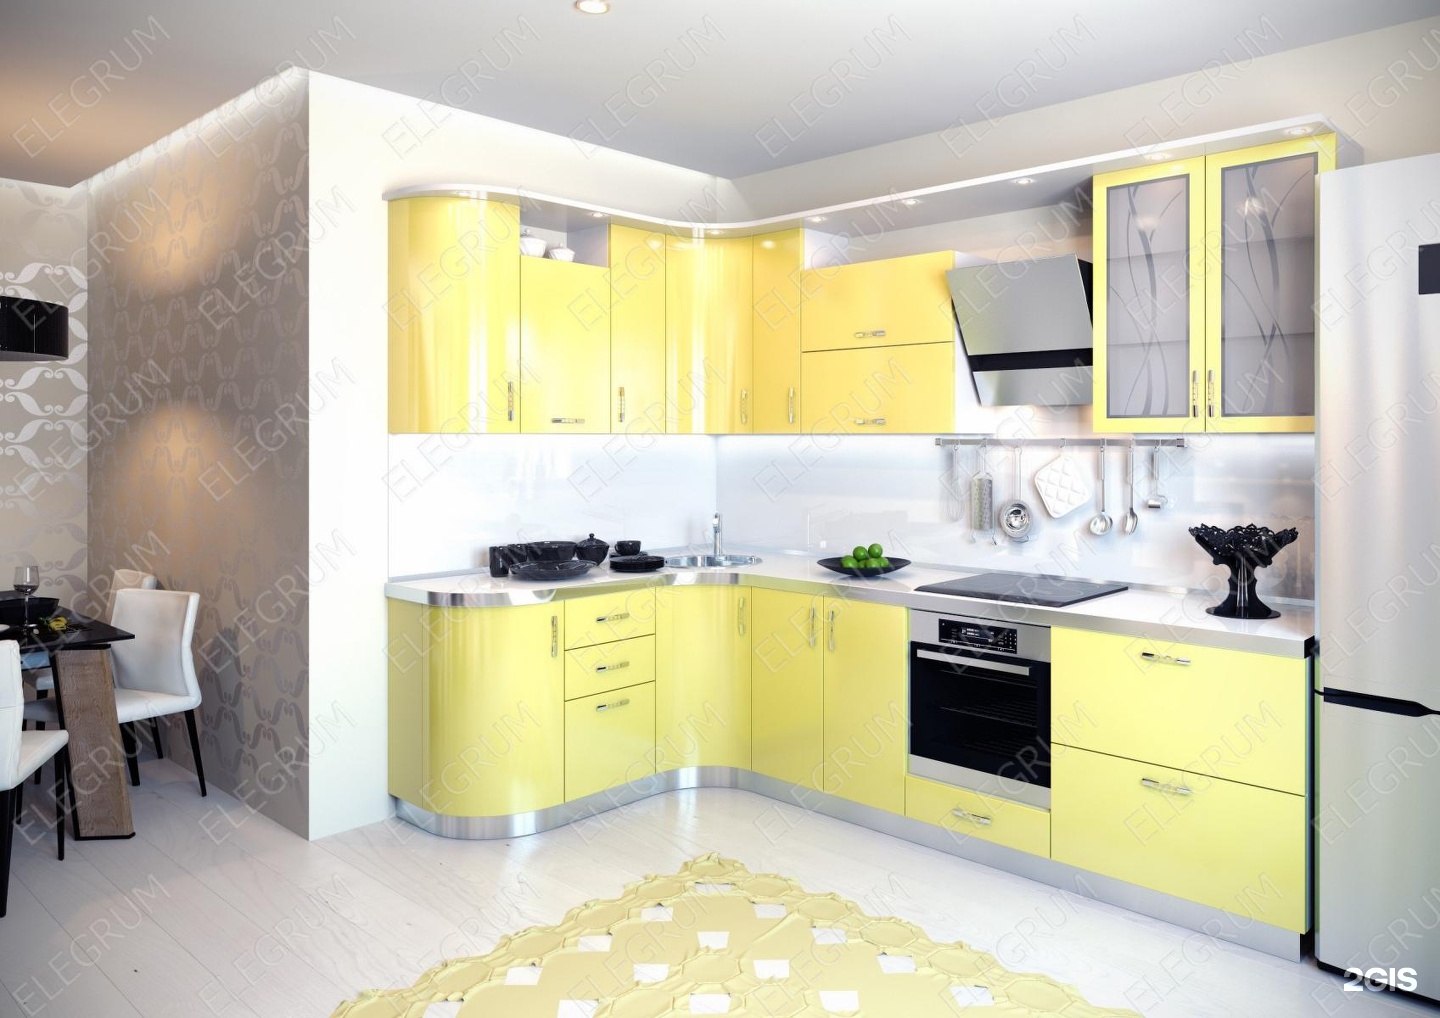 Купить желтую кухню. Желтые кухни. Кухонный гарнитур желтого цвета. Желтая угловая кухня. Кухня в желтом цвете.